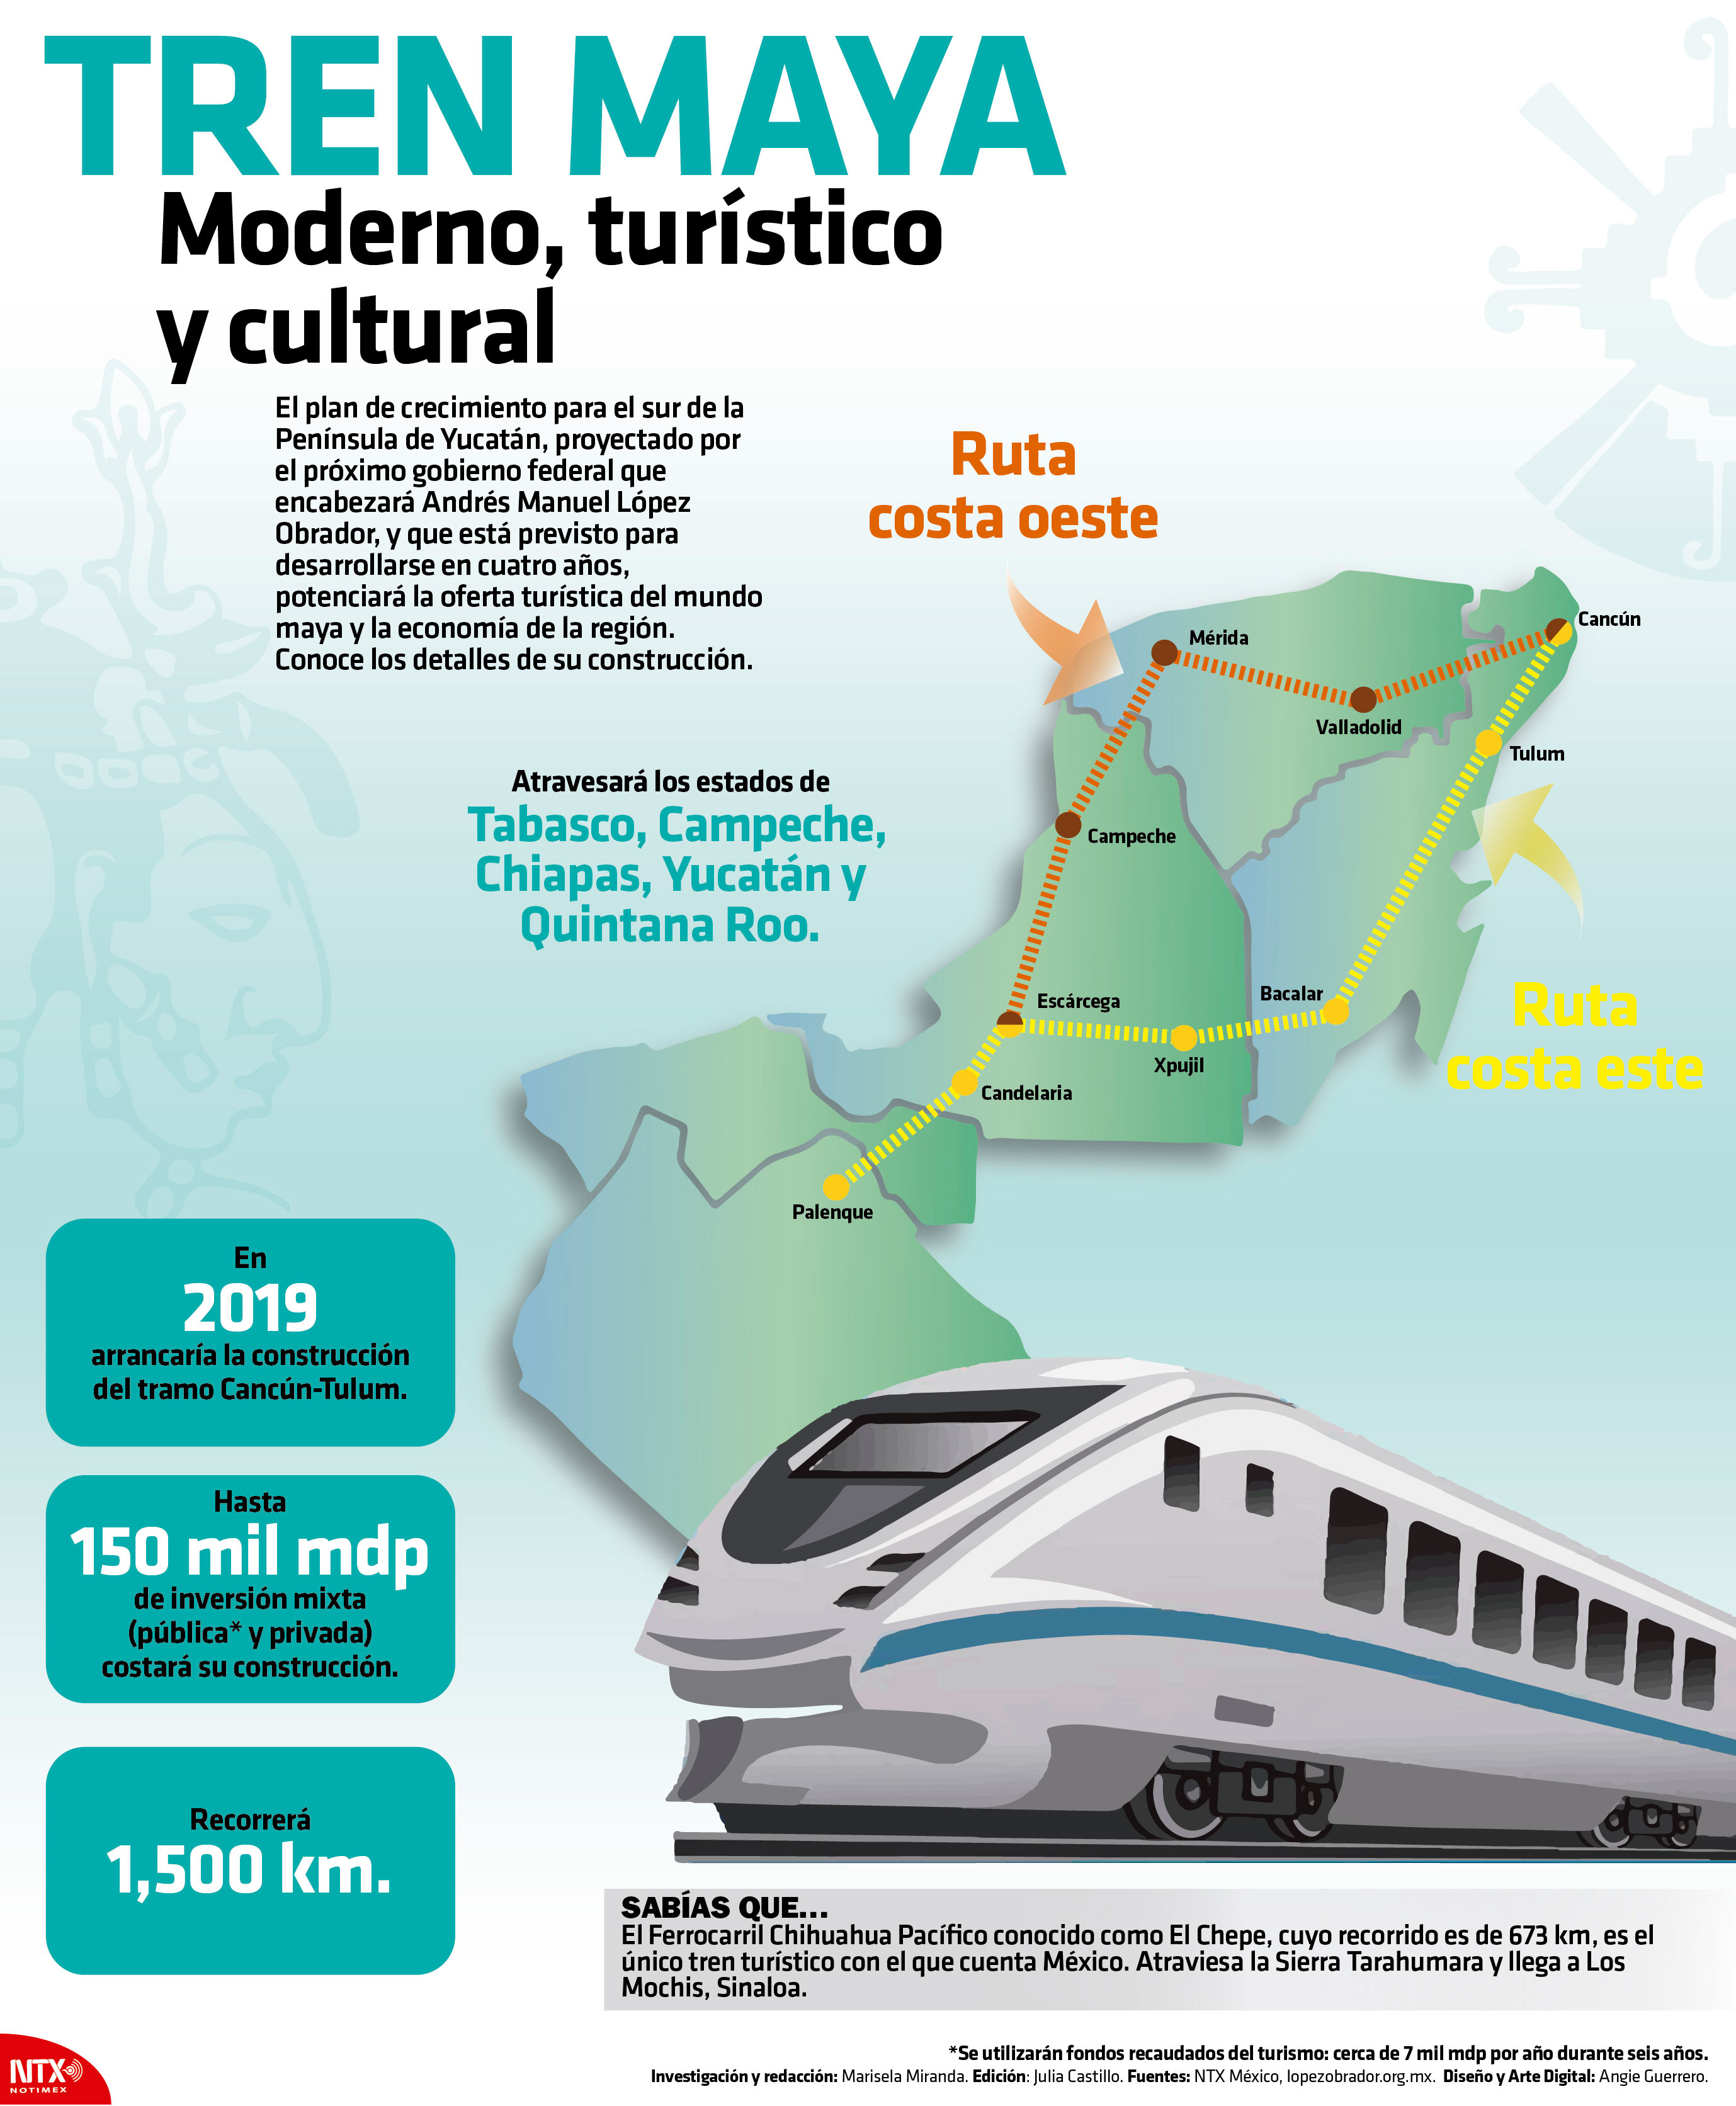 Tren Maya, moderno, turstico y cultural